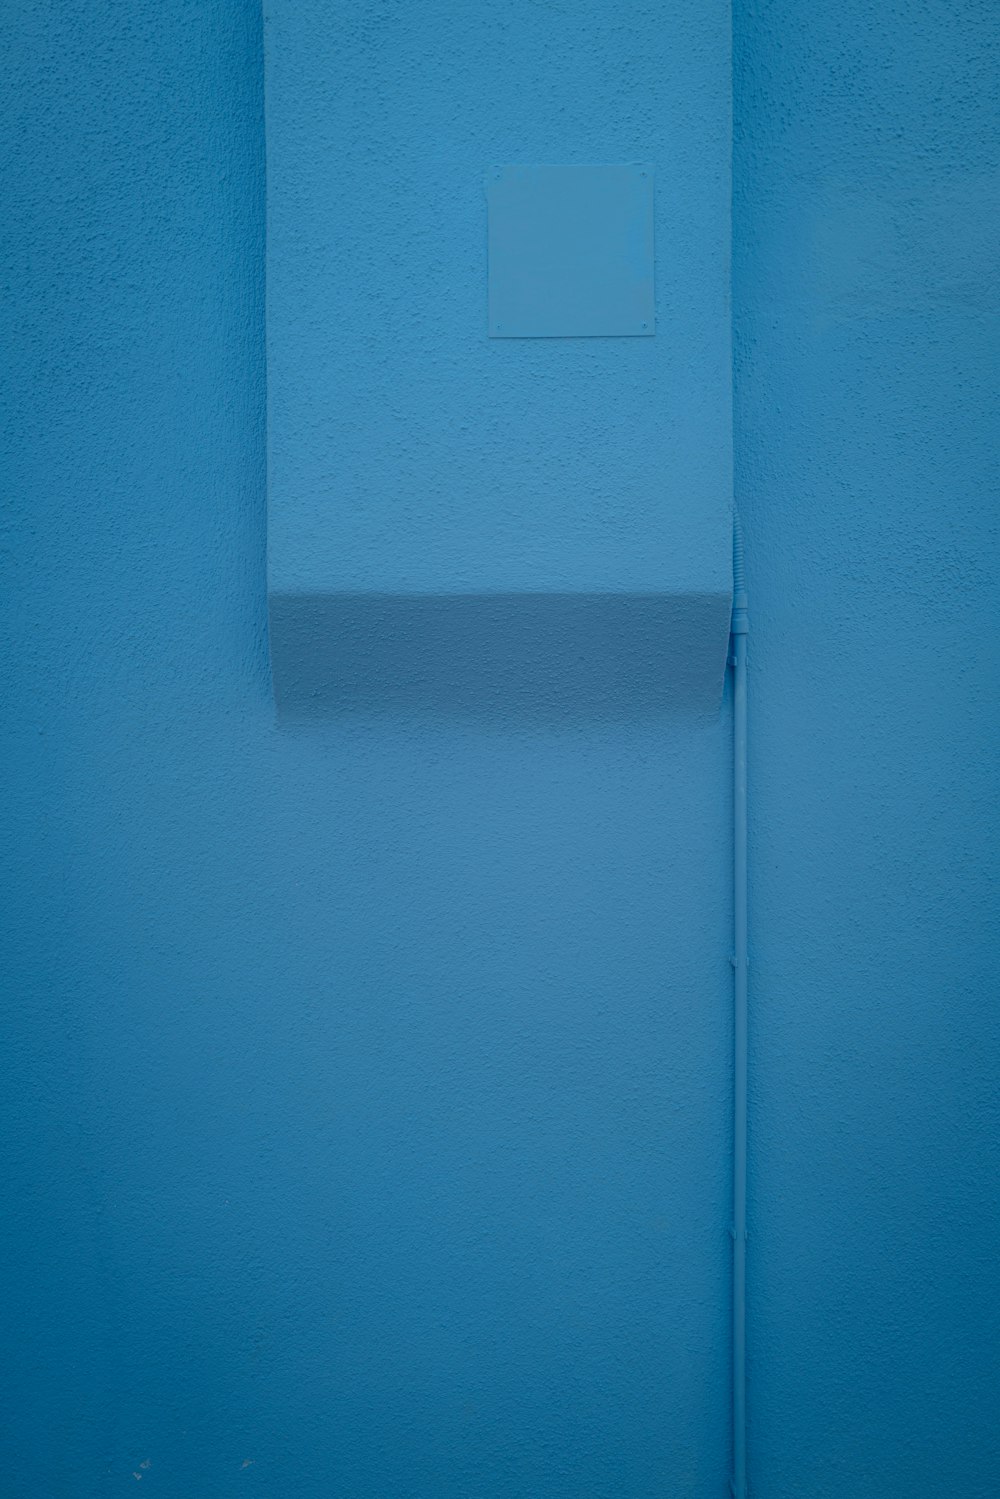 파란색 벽에 흰색 조명 스위치